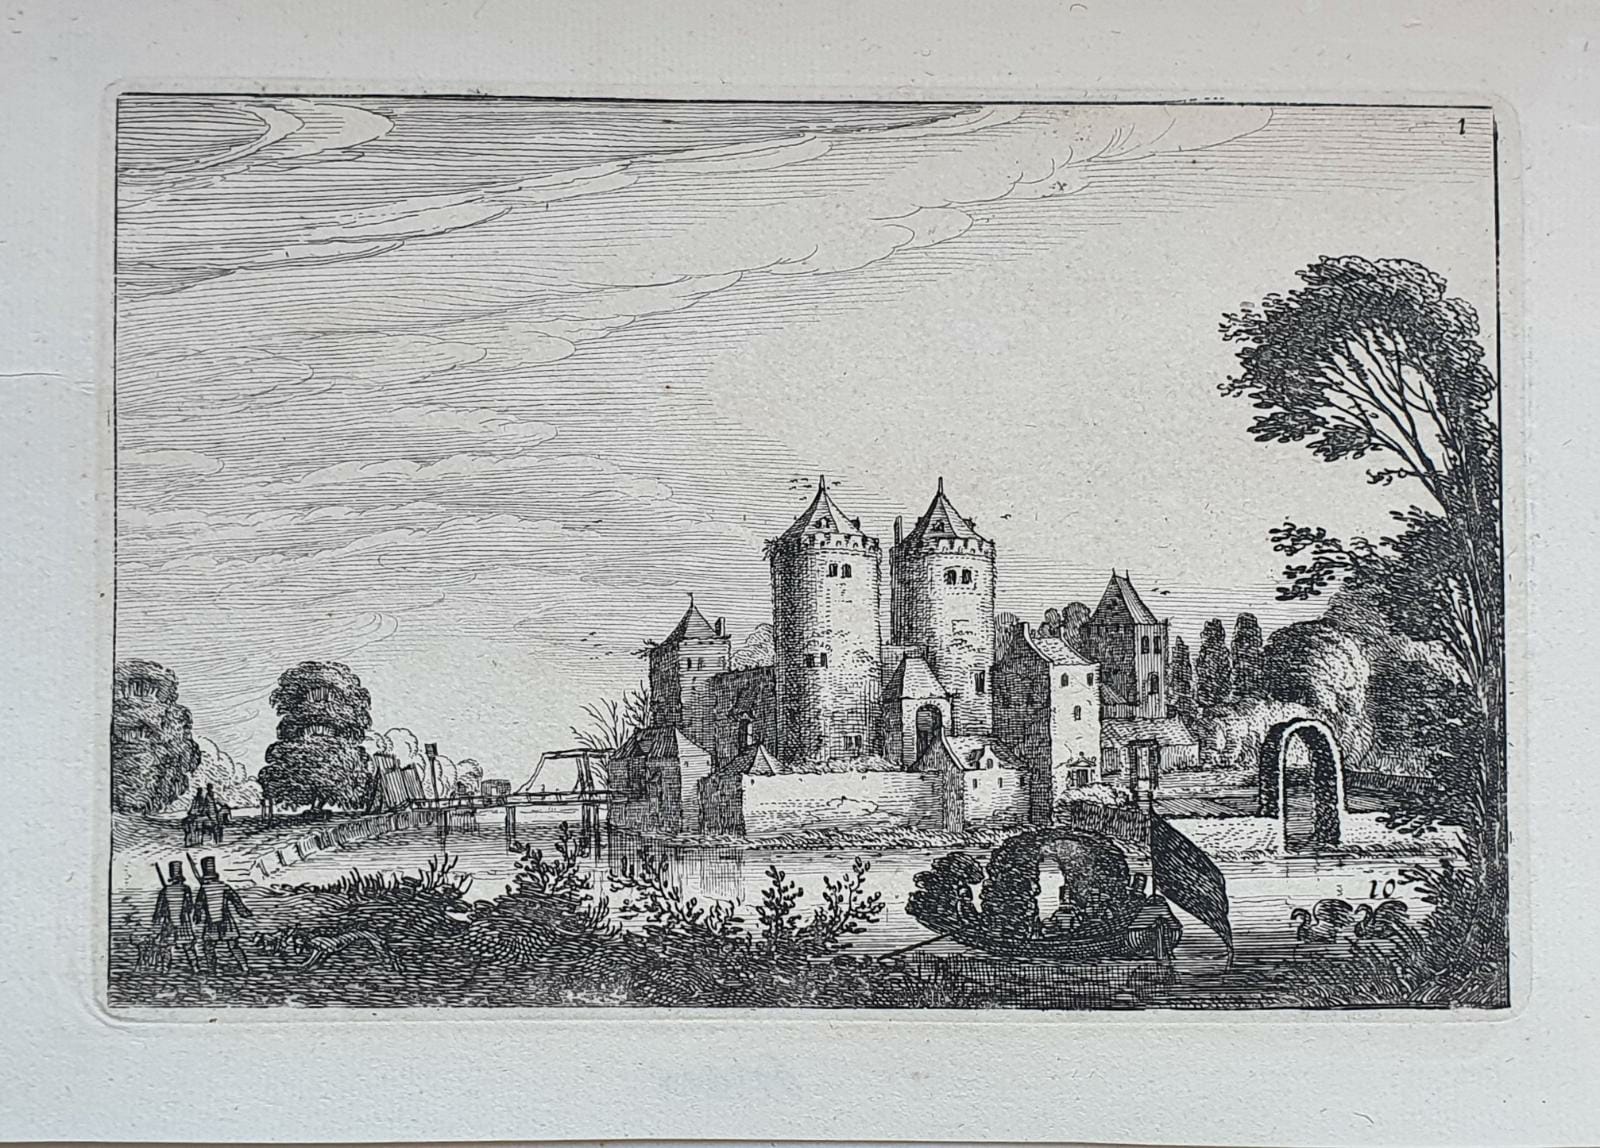 [Antique etching, ets, landscape print] J. v.d. Velde II, Figures in a pleasure boat near a castle (plezierbootje bij kasteel), published before 1713.